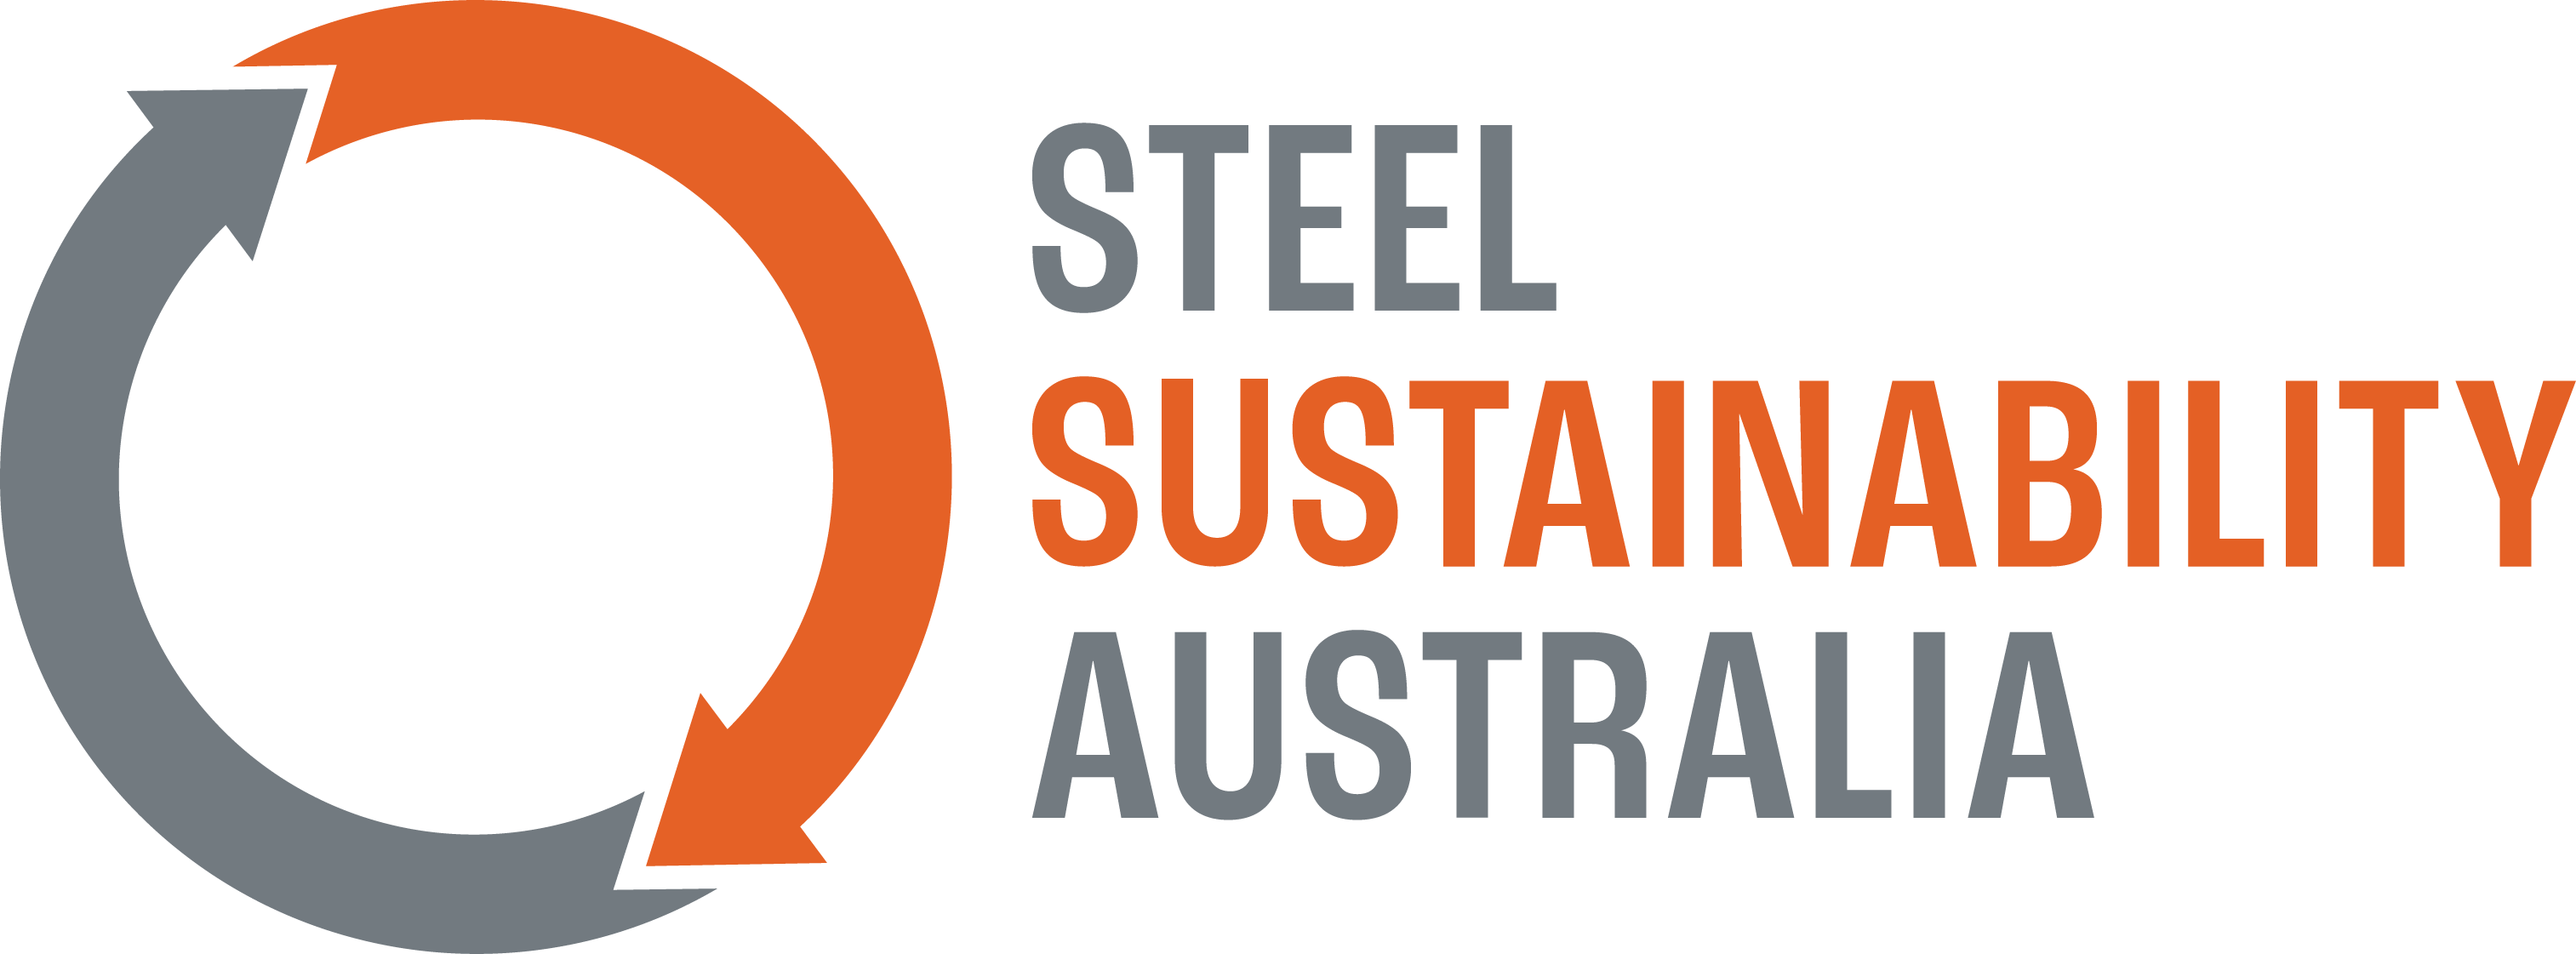 Steel Sustainability Australia